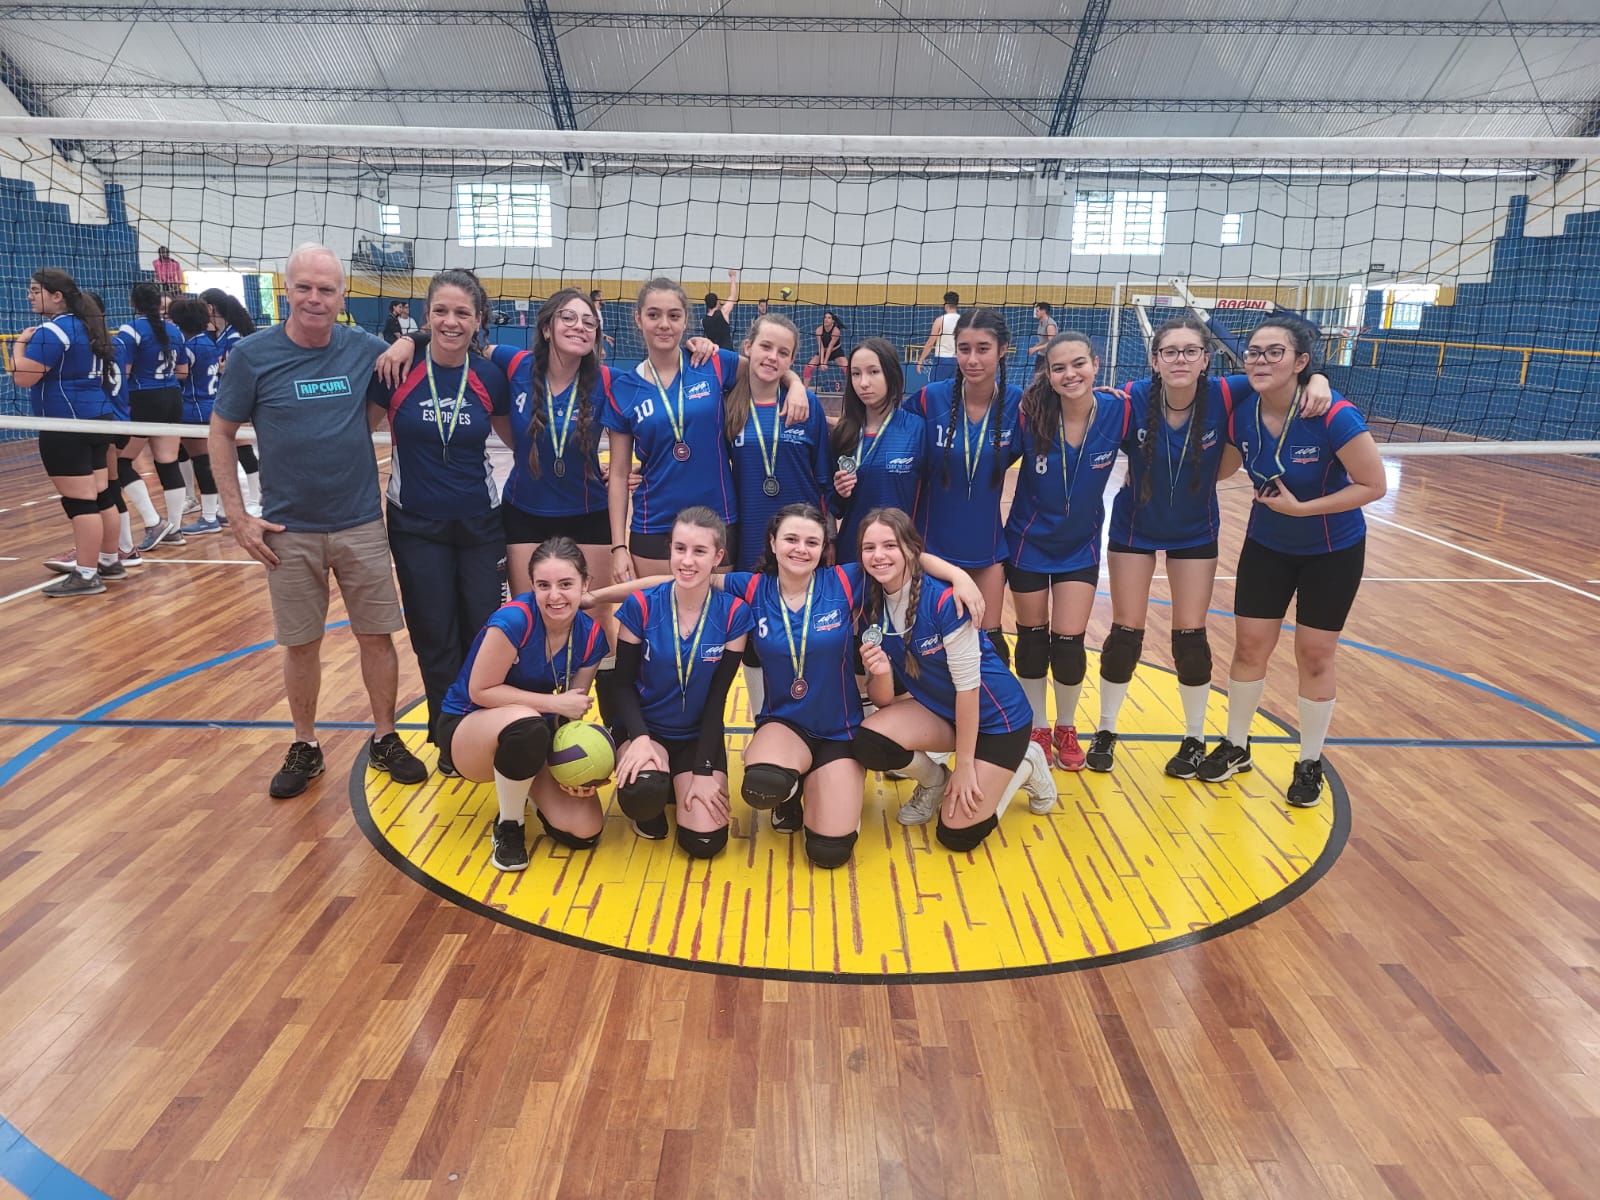 Festival de Voleibol SEMJEL 2022 conhece os campeões da categoria